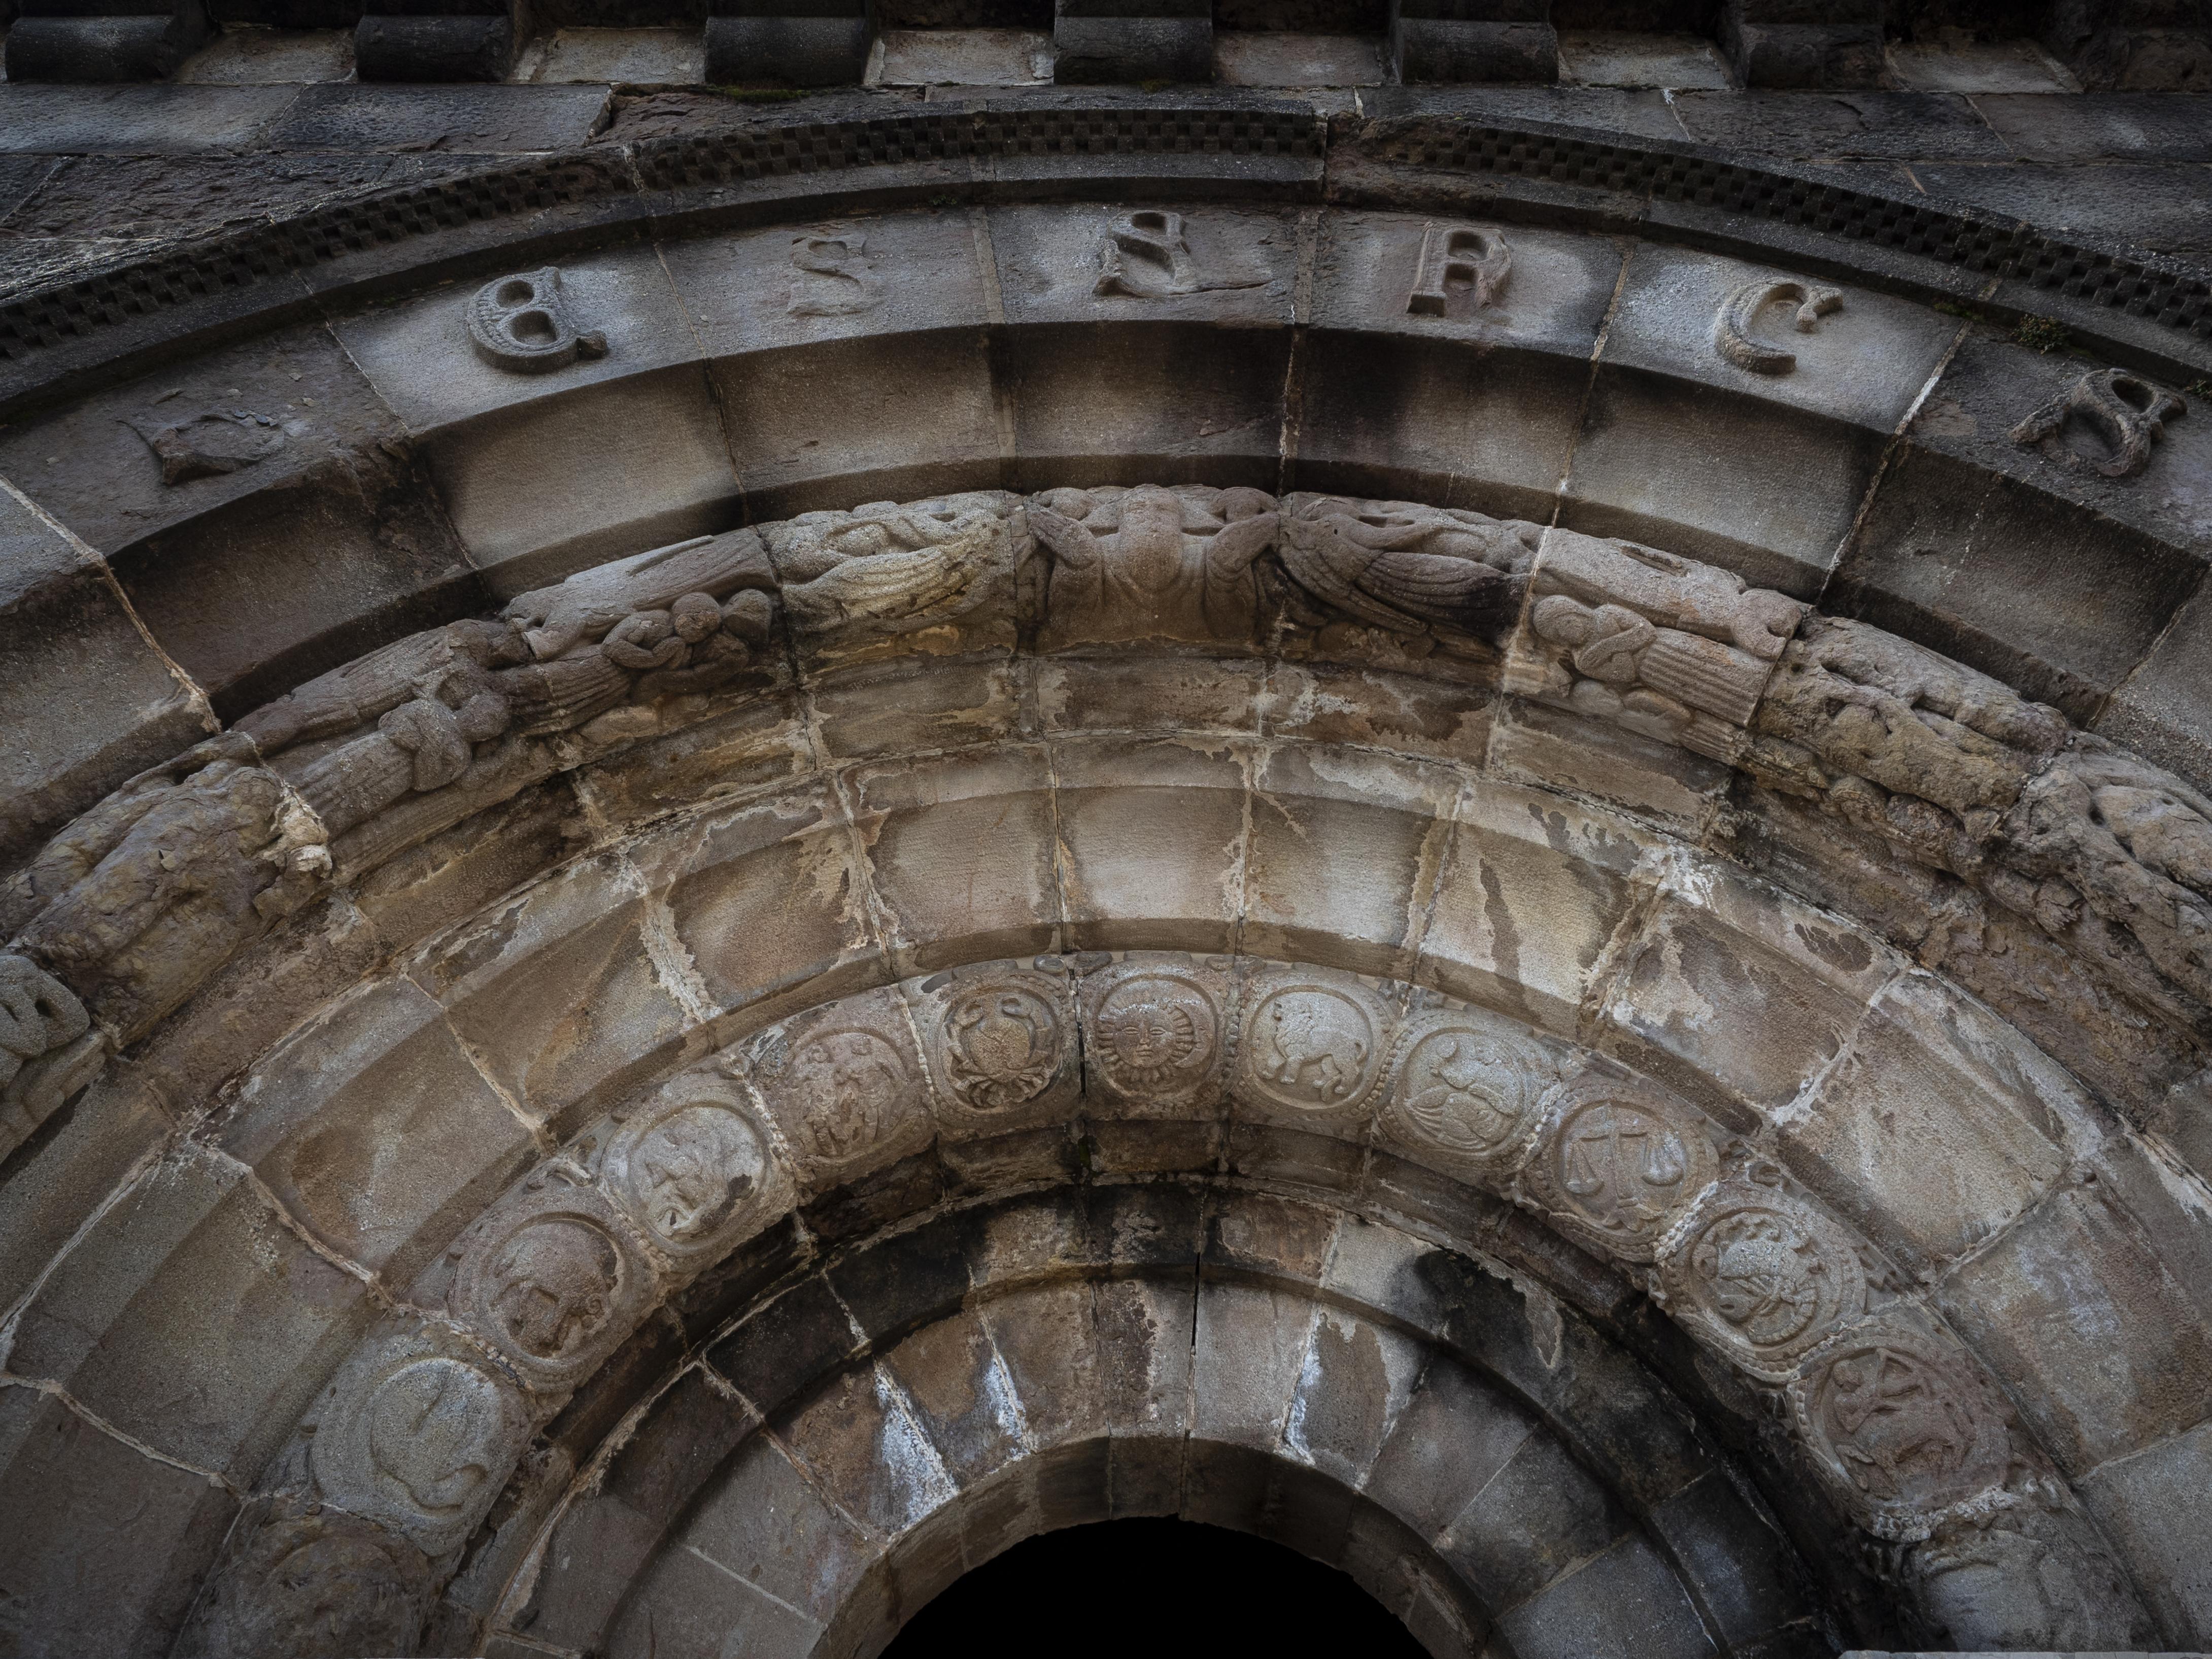 A l'arc de sobre la porta d'entrada hi podem trobar els signes del zodíac, passatges de l'Antic Testament i el nom de la família propietària. FOTO: Anna E. Puig